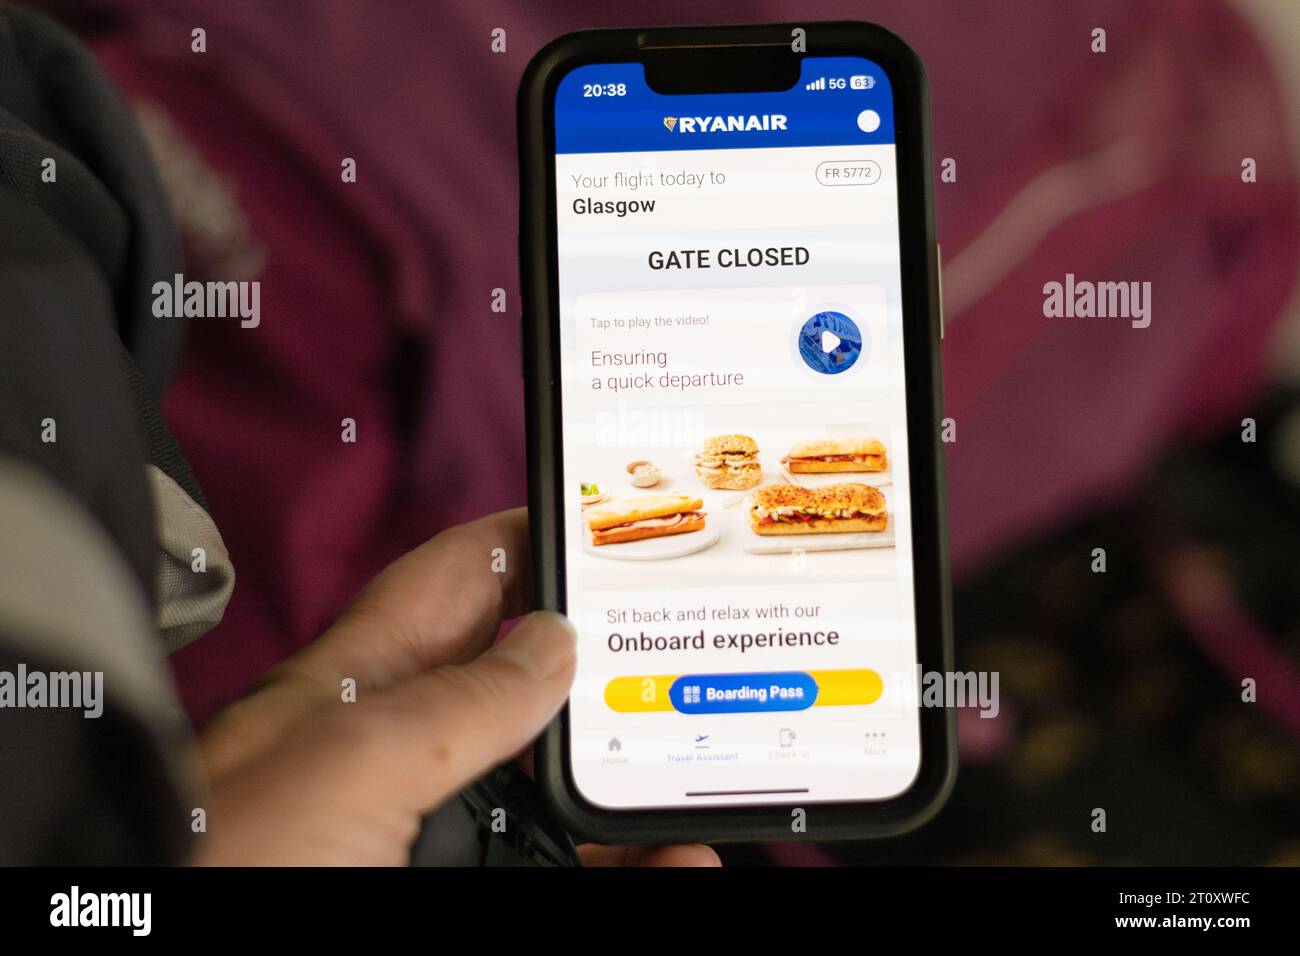 Vol manqué - passager regardant le message porte fermée sur l'application téléphone Ryanair avec des sacs sur le chariot de l'aéroport en arrière-plan Banque D'Images